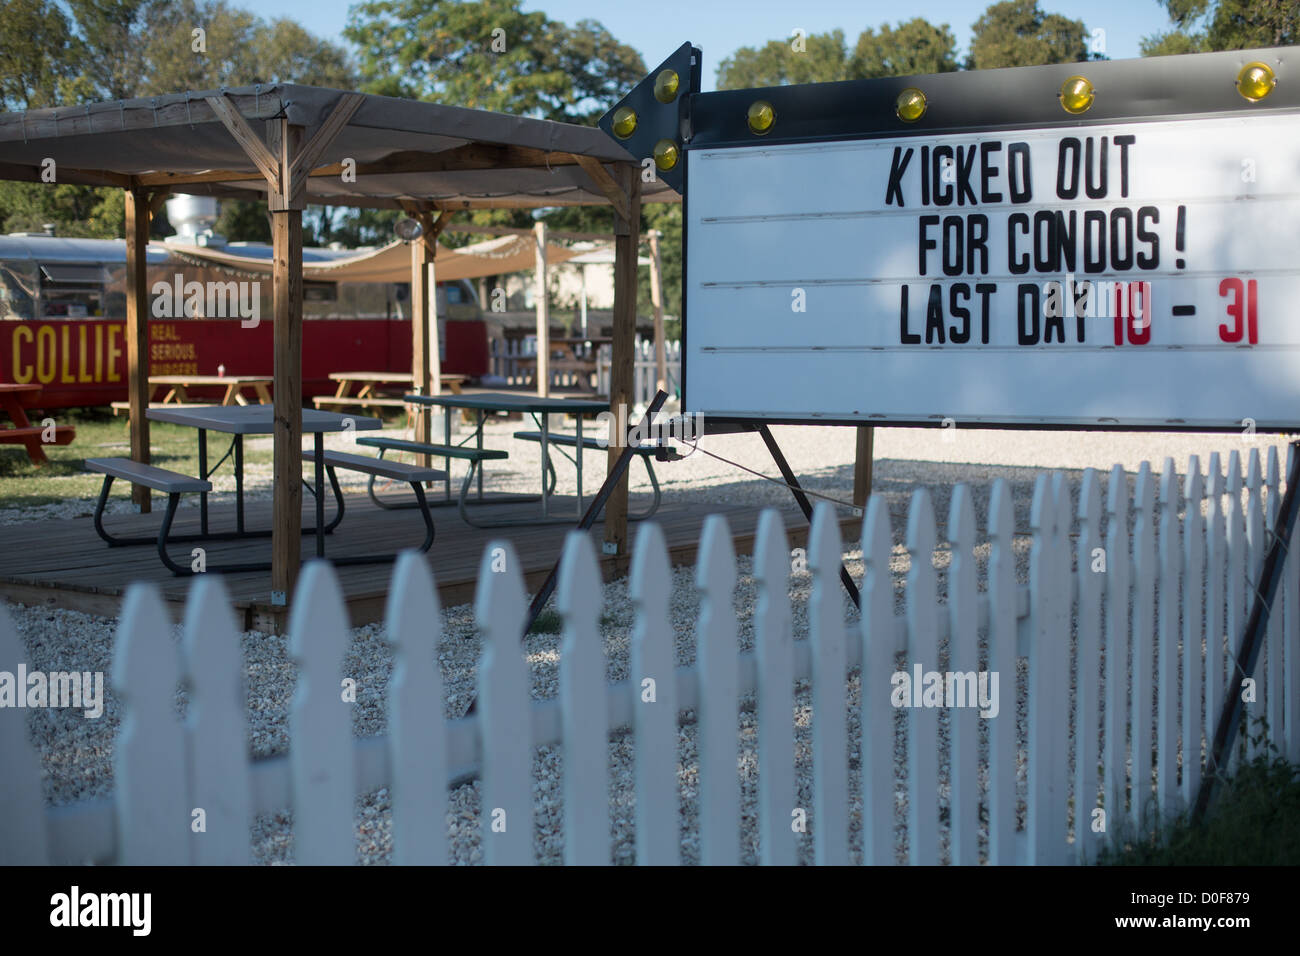 Un cartel que dice "expulsado de condominios! Último día 10-31' en Austin, Texas en South Lamar Blvd. Foto de stock